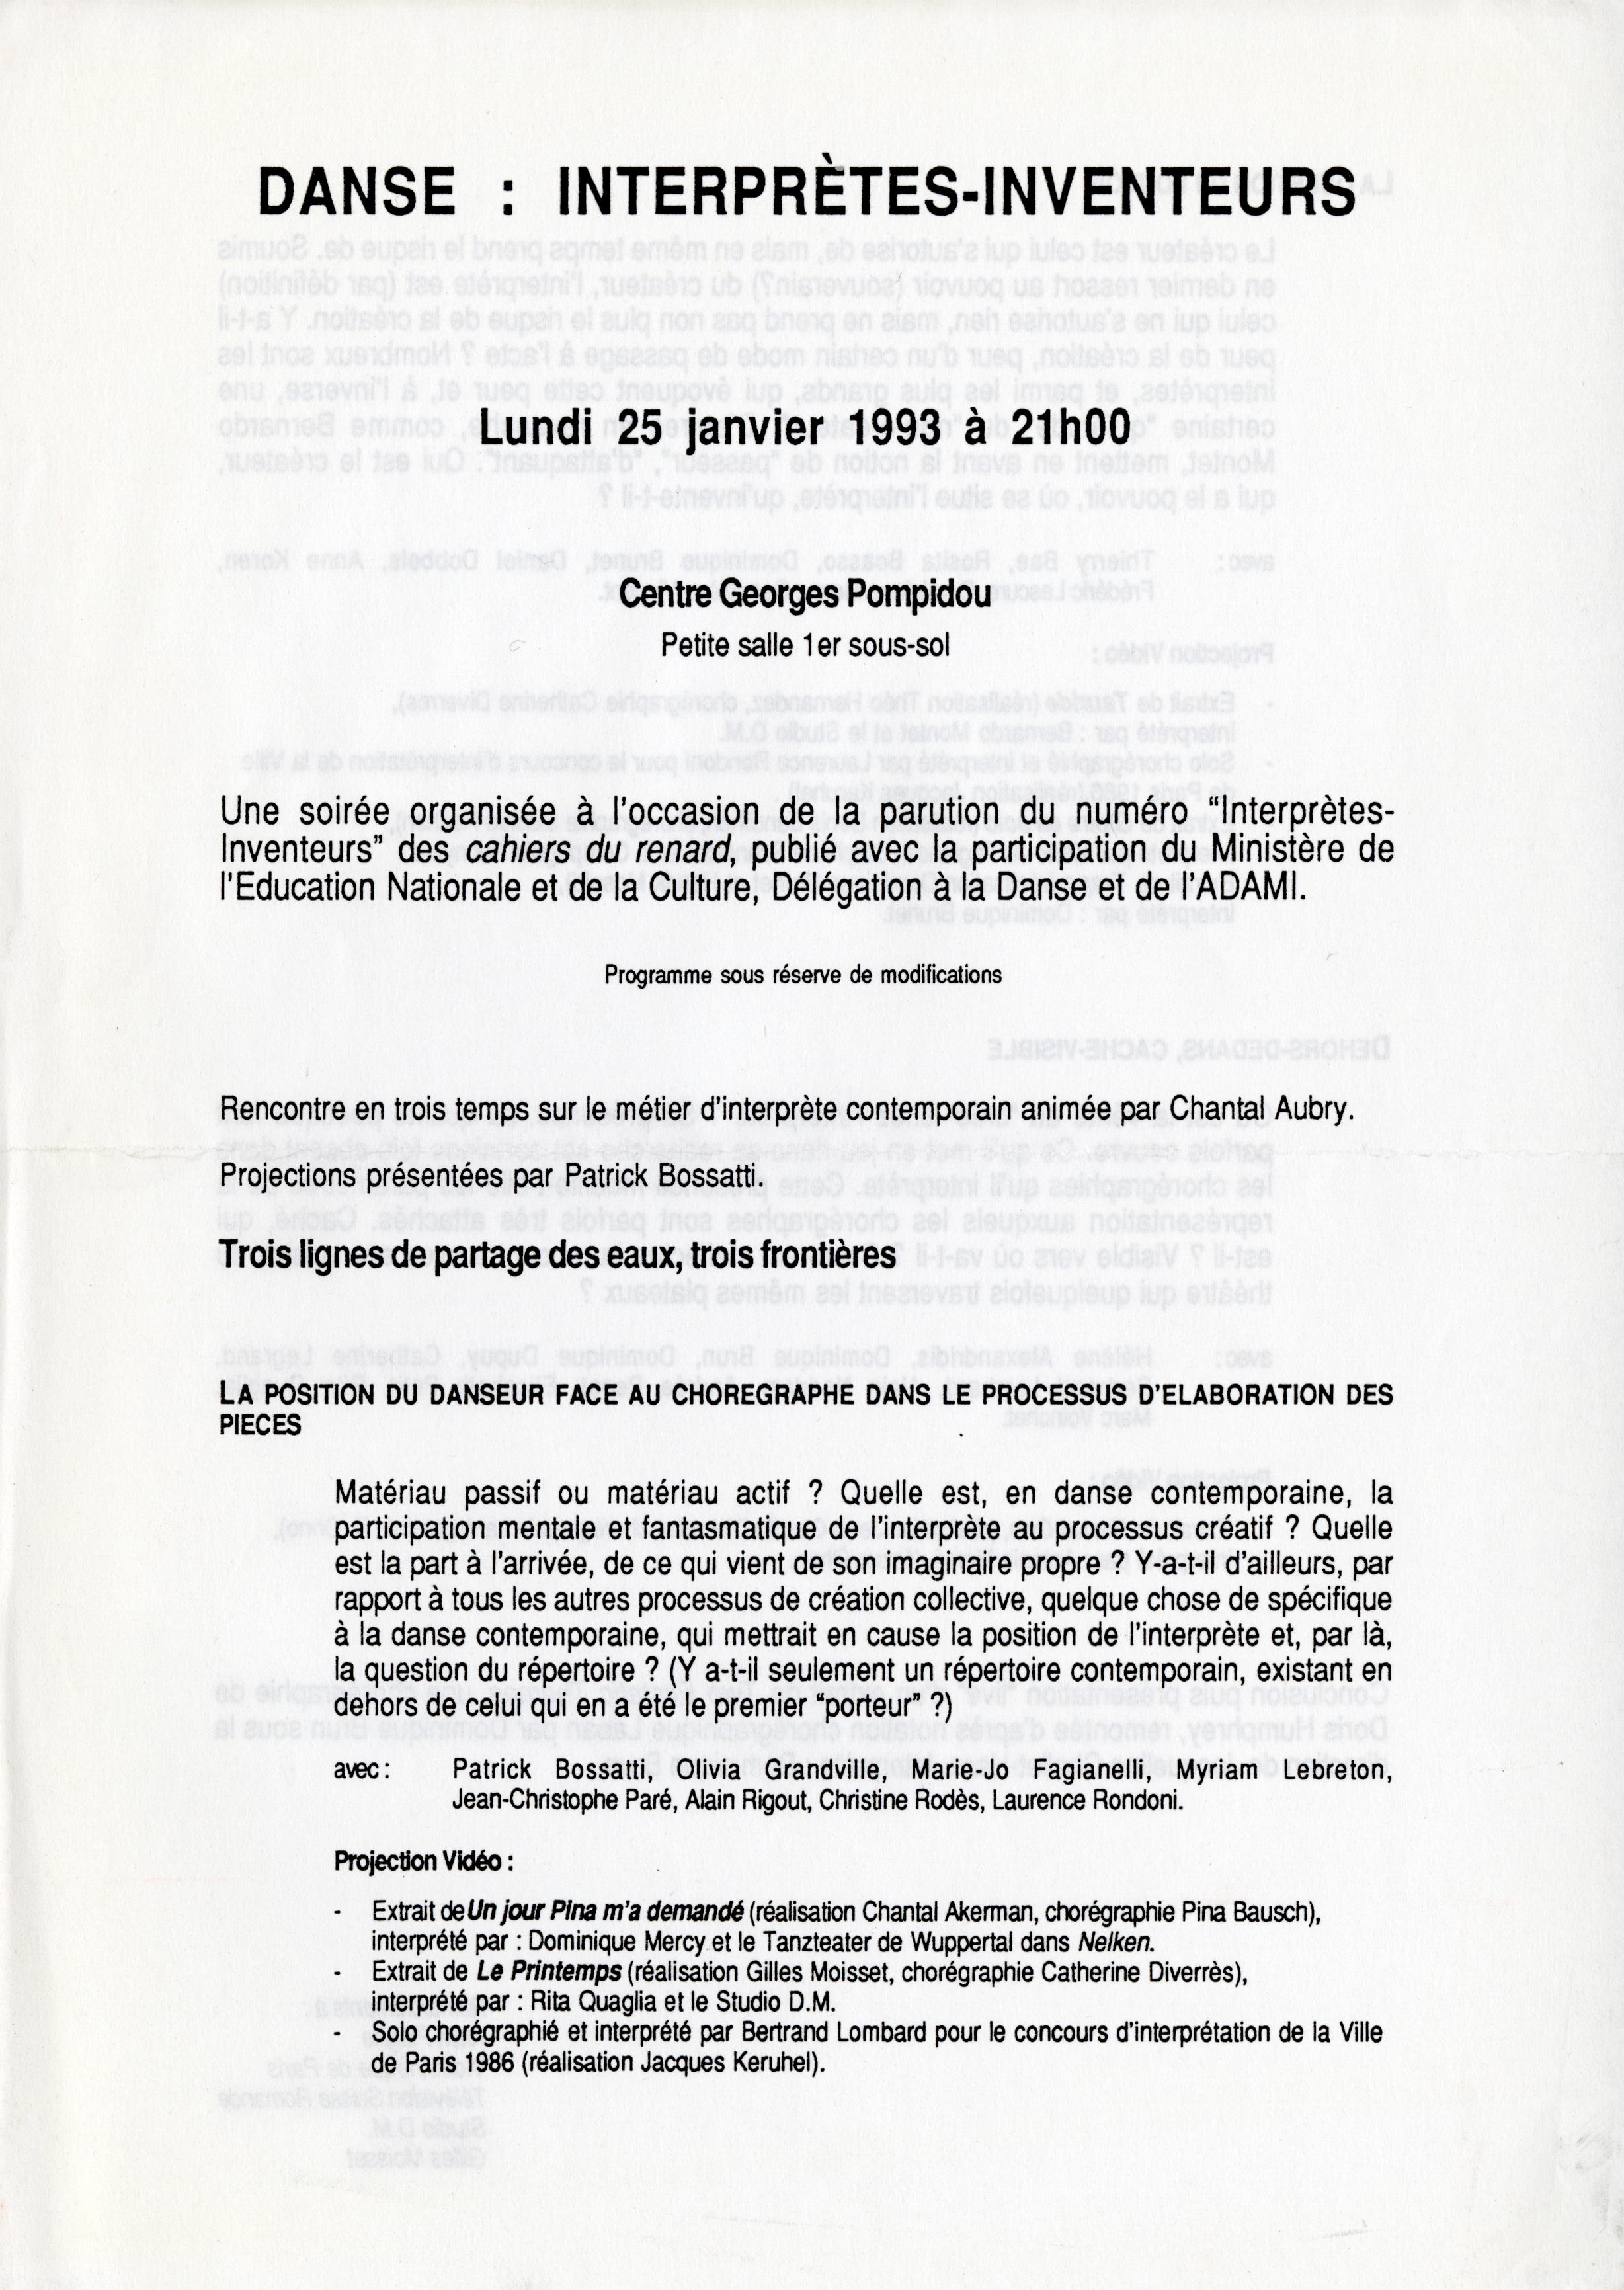 Programme de la soirée "Interprètes-inventeurs" au Centre Georges Pompidou, janvier 1993.